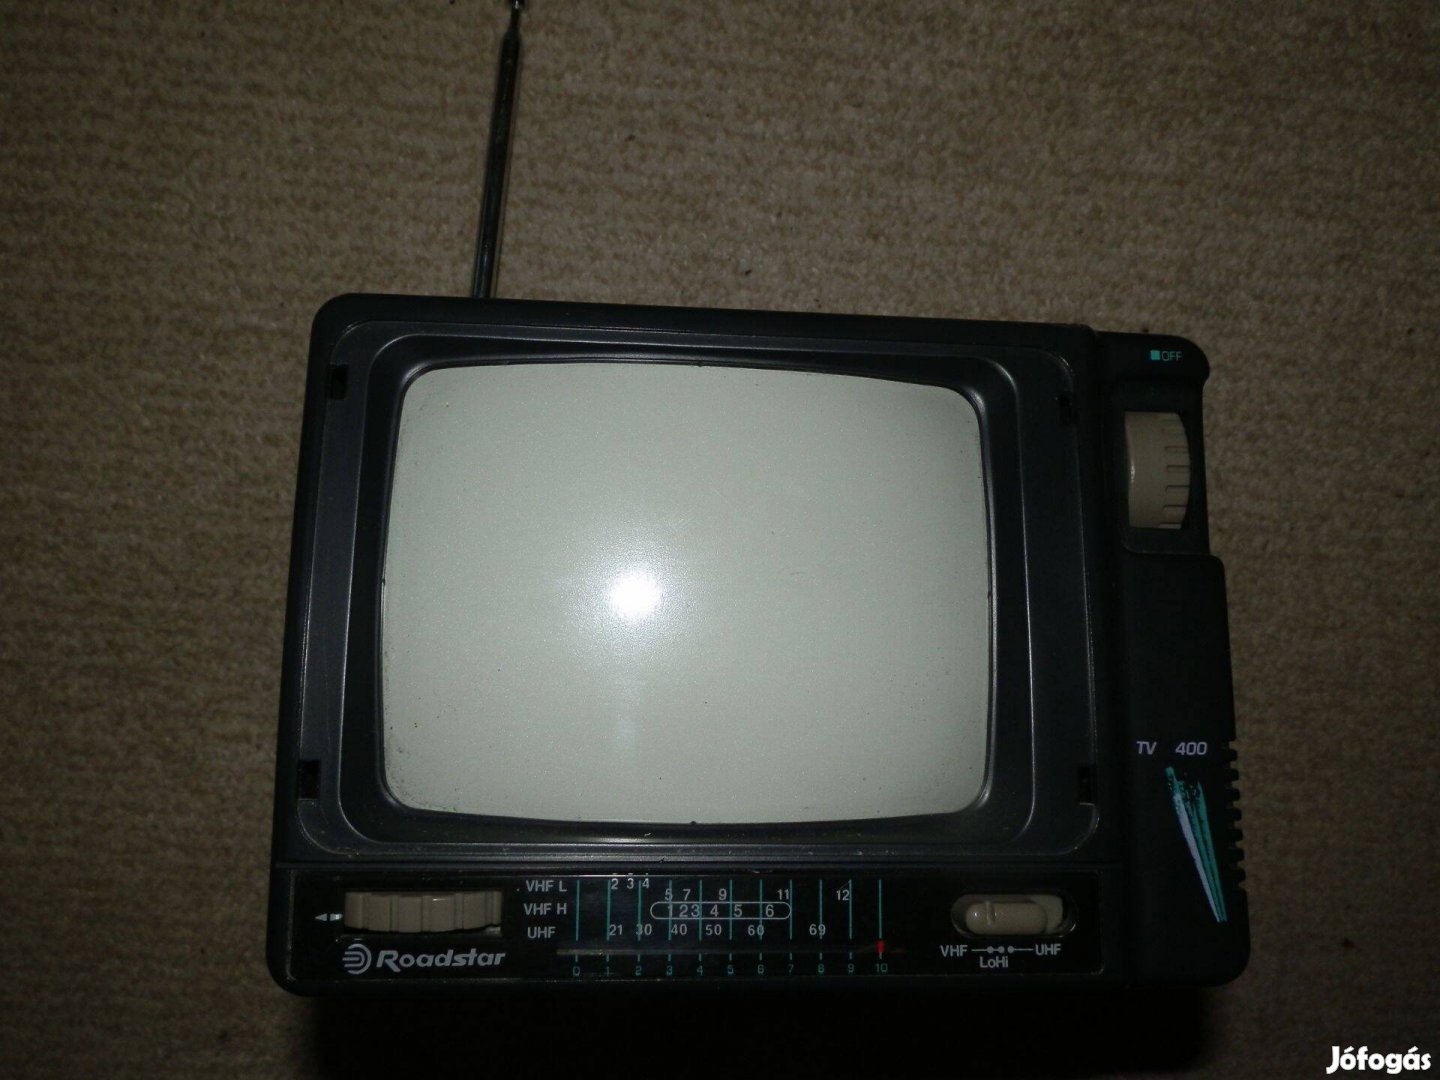 Roadstar FF kis tv készülék gyűjteménybe